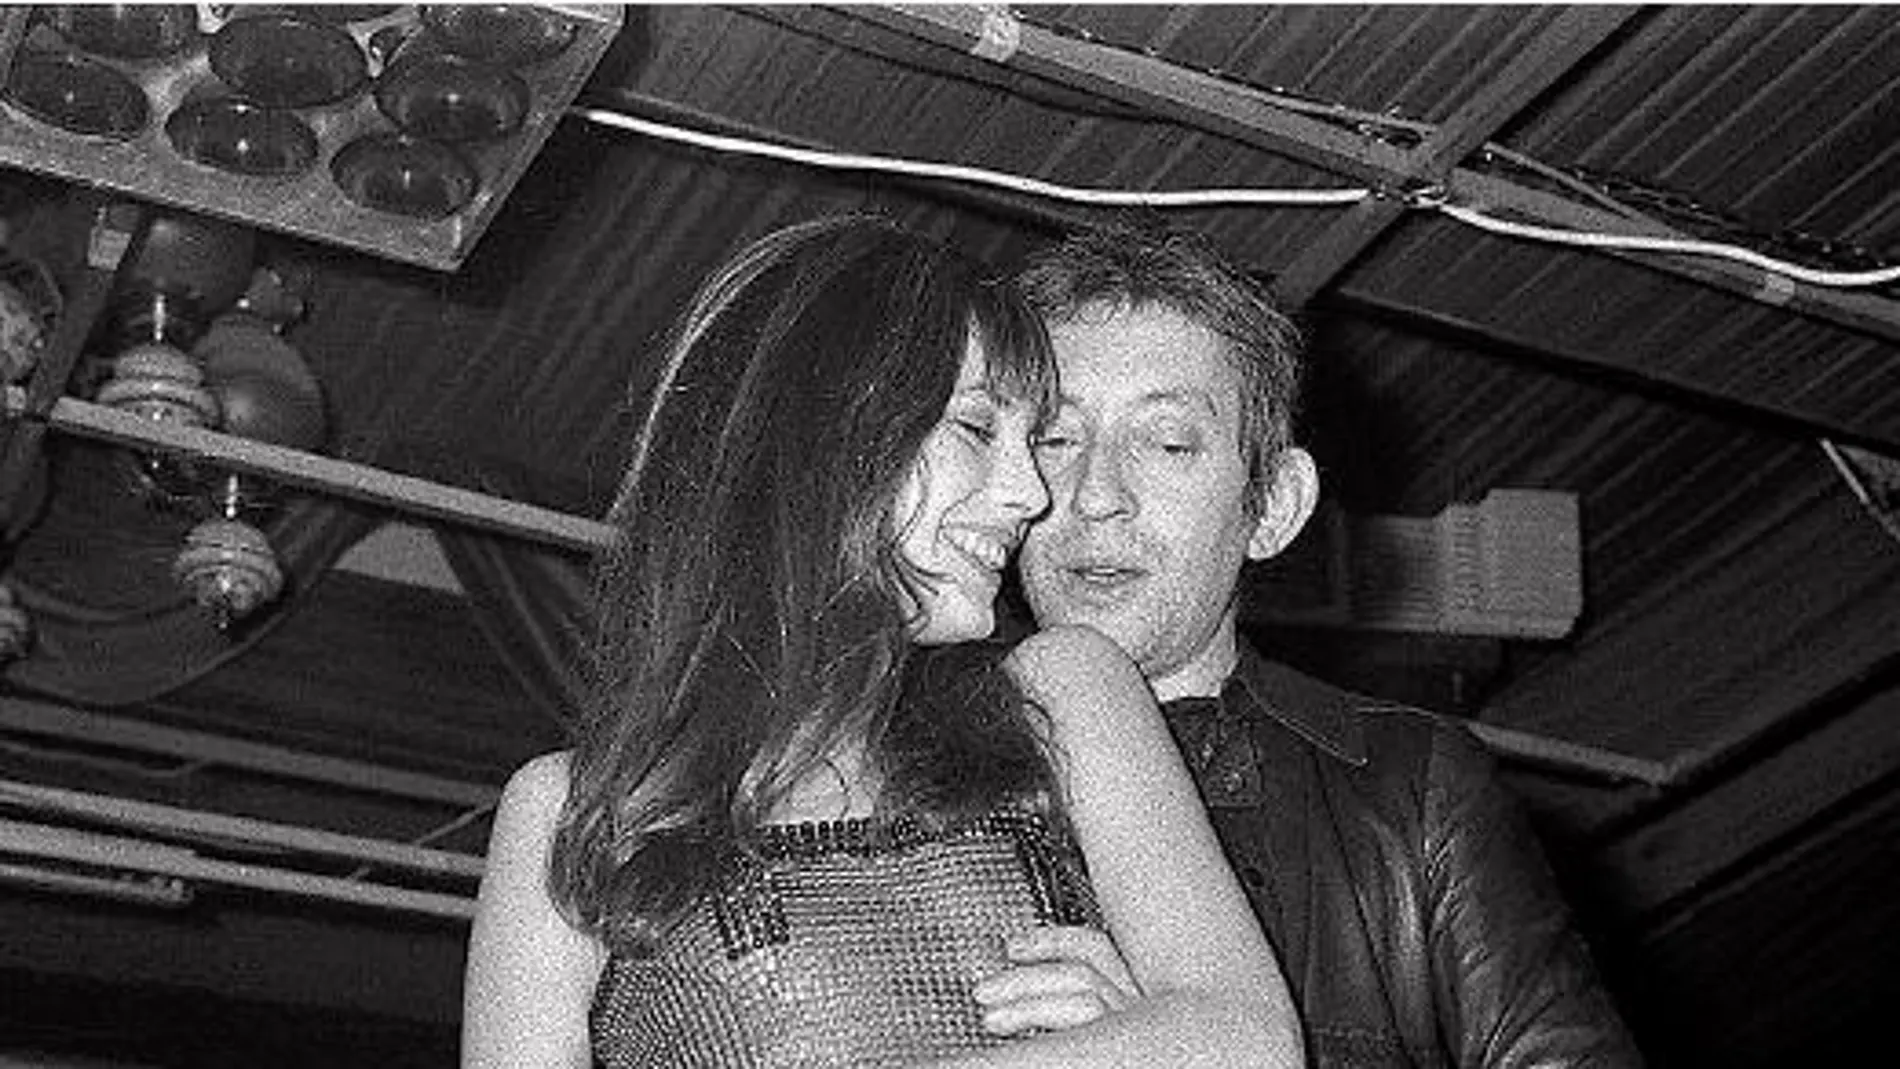 Tras la negativa de Brigitte Bardot, Gainsbourg edita «69, année erotique» junto a su nueva pareja, la británica Birkin